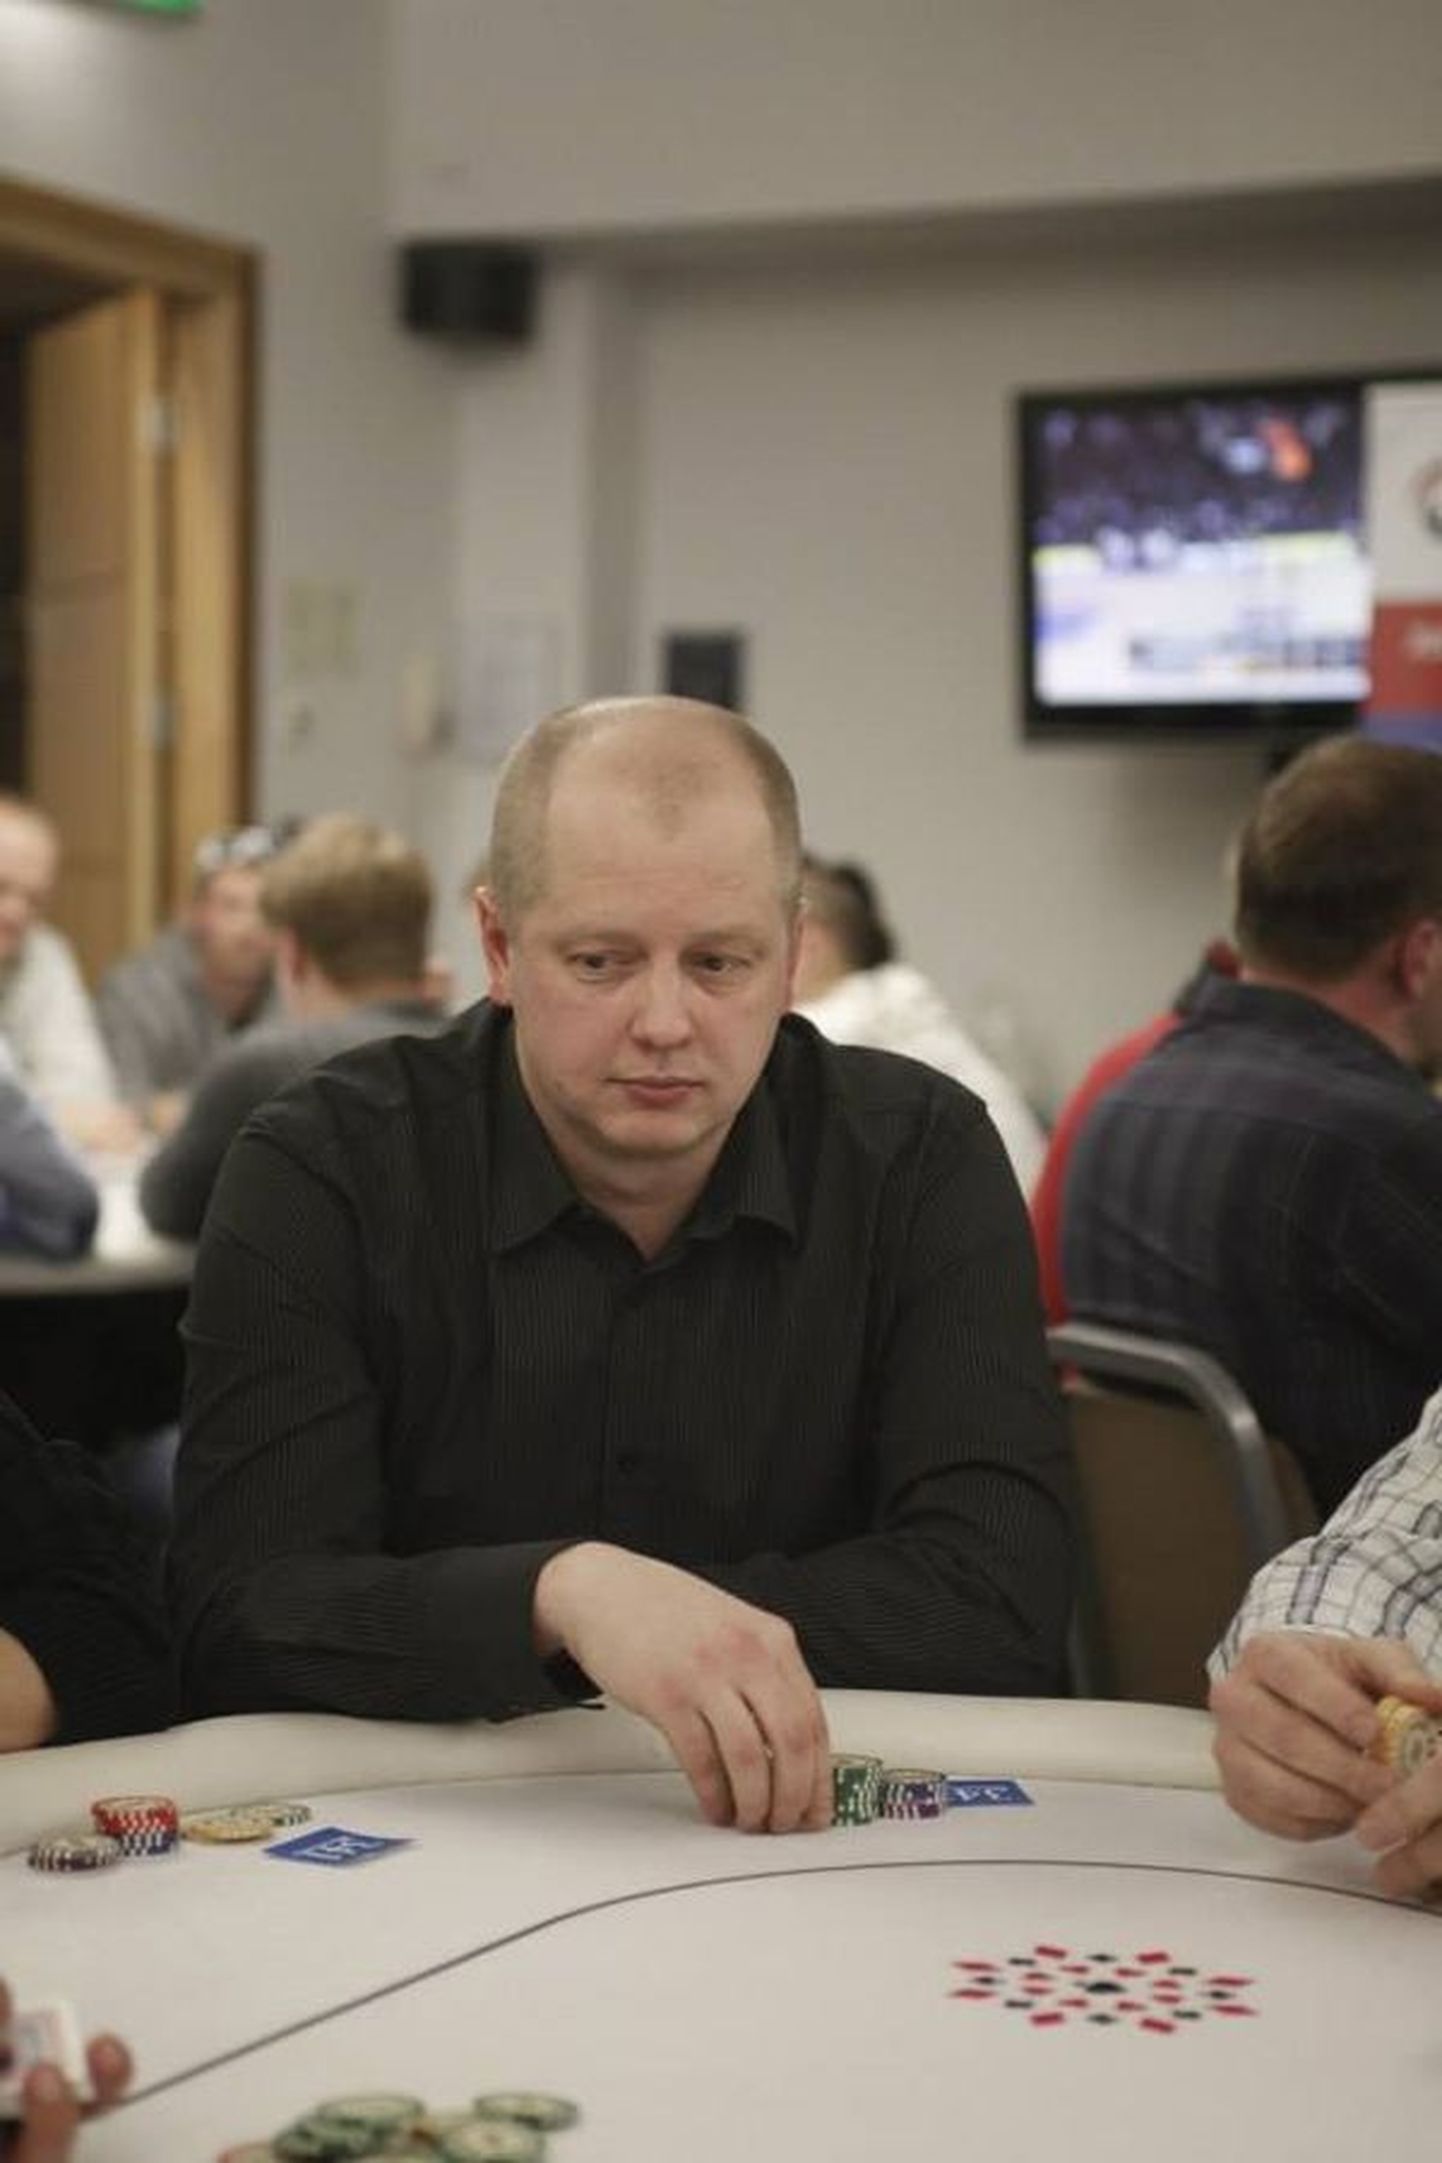 Viljandimaal üles kasvanud Tarmo Sengbusch osutus pokkeri online-turniiril 5229 mängija seas parimaks. Pilt on tehtud Eesti meistrivõistlustel.